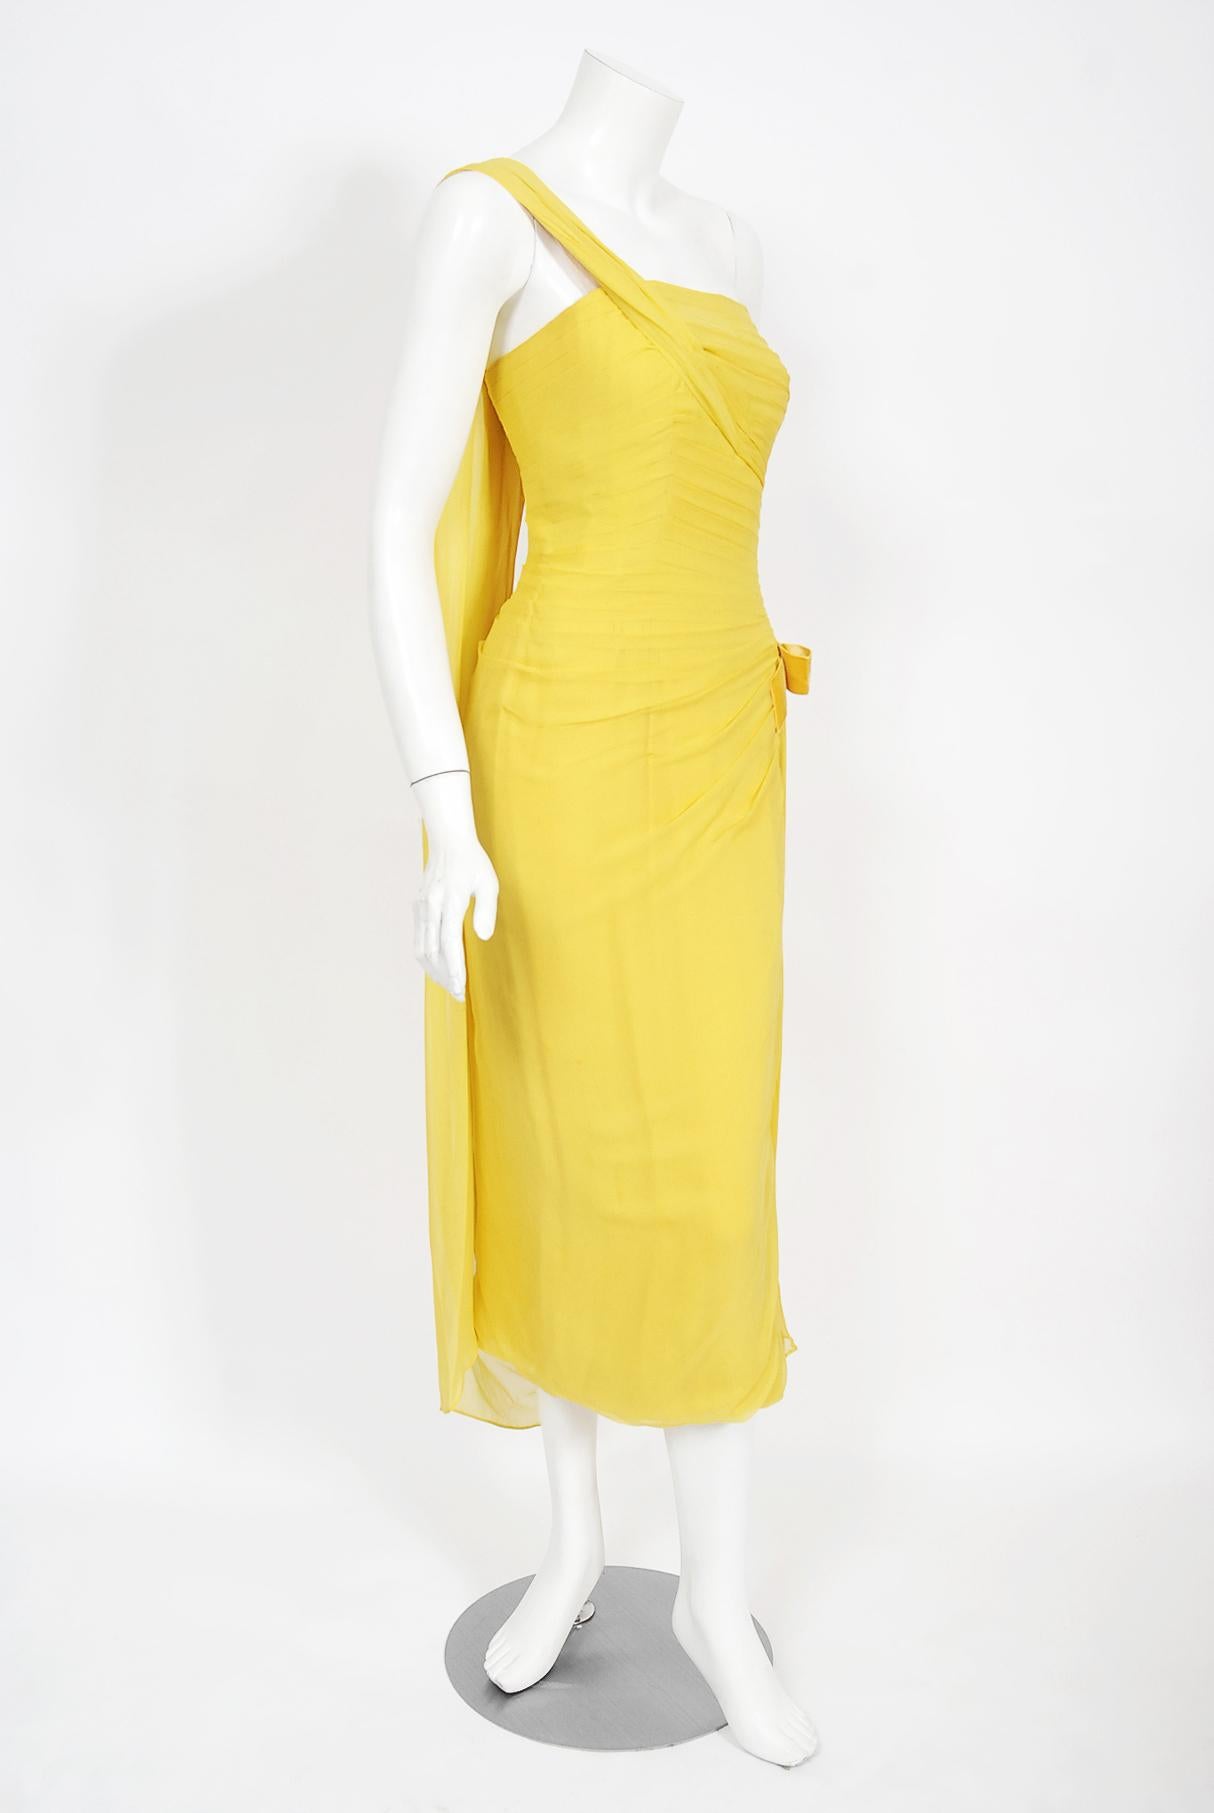 Philip Hulitar - Robe sablier drapée en mousseline de soie plissée jaune, vintage, années 1950 en vente 6